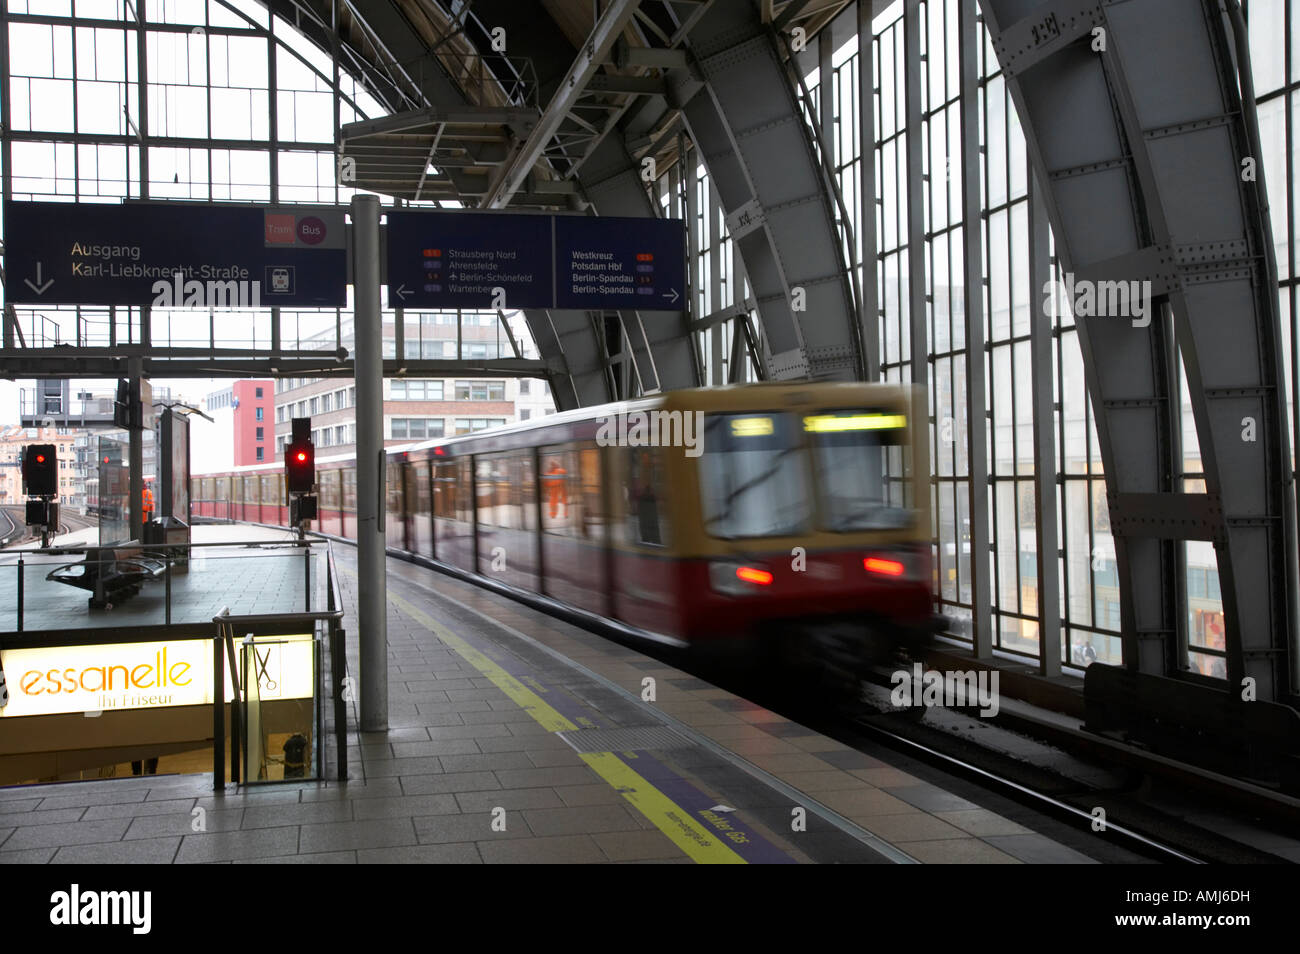 La vitesse des trains S-Bahn Berlin dernière plate-forme à la gare Alexanderplatz Allemagne Banque D'Images